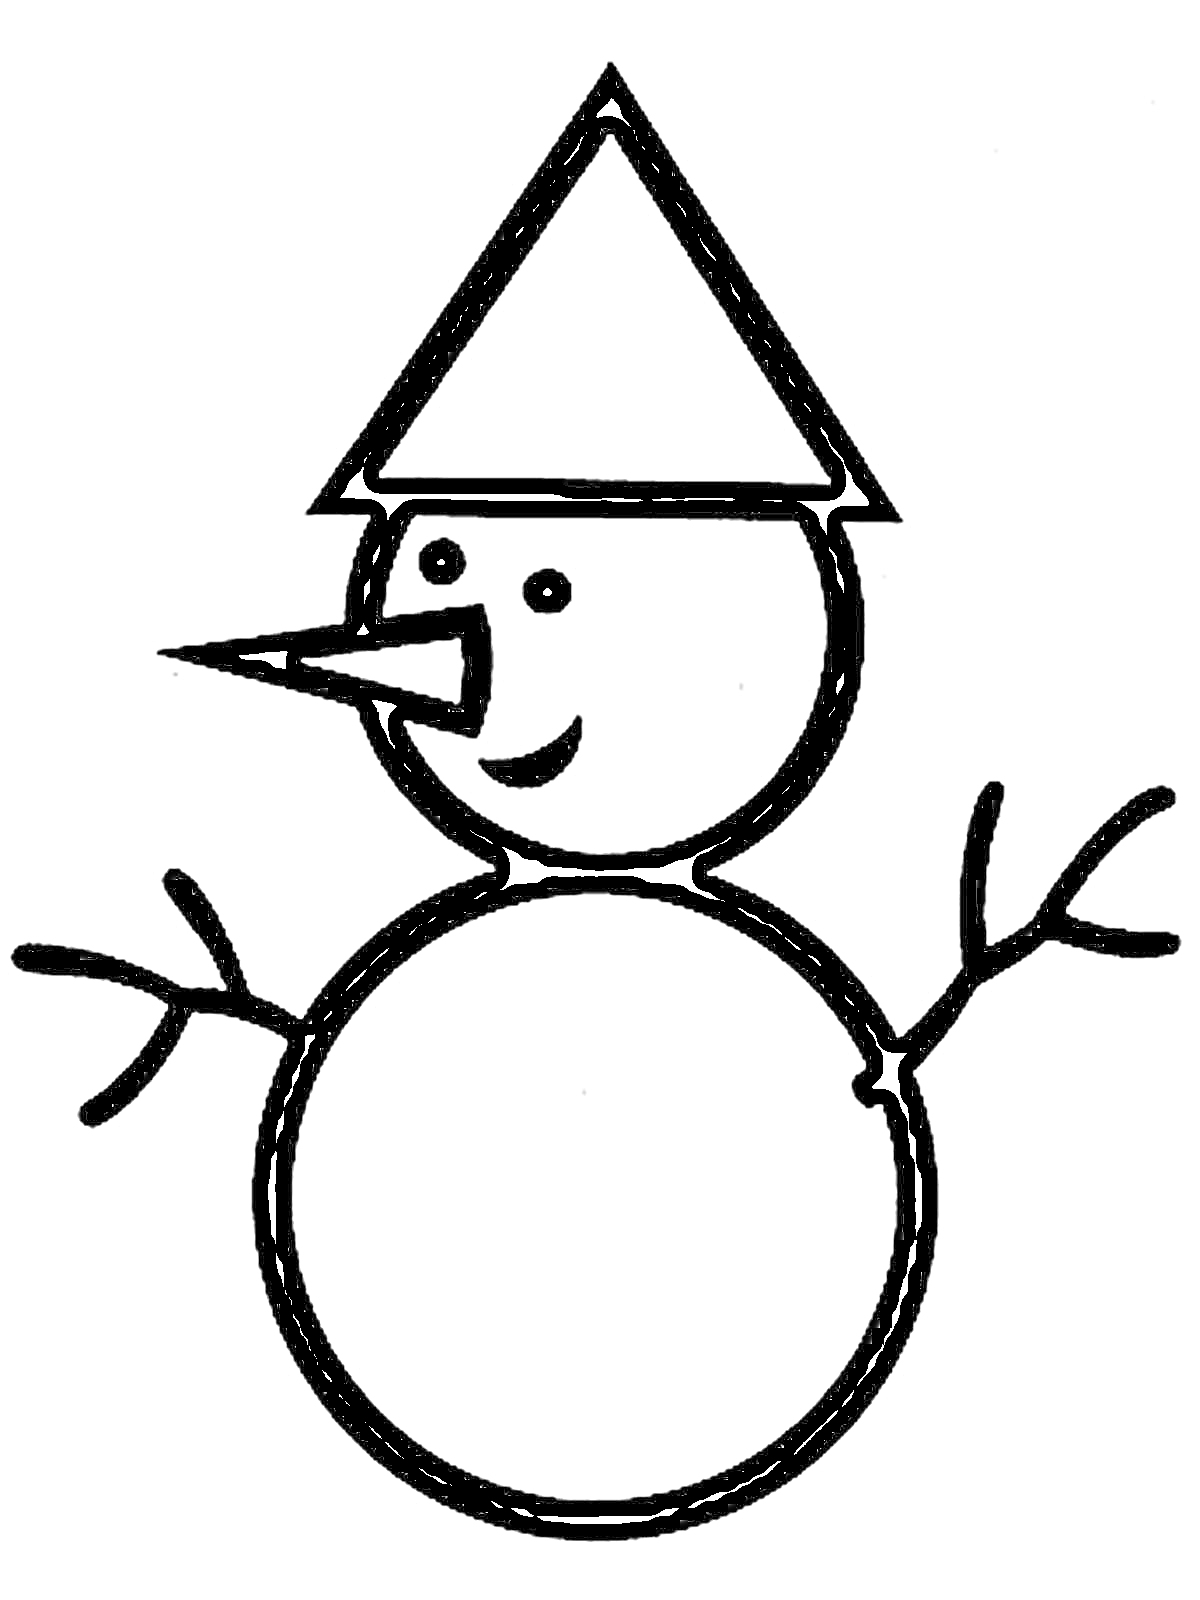 Раскраска Снеговик с треугольной шляпой, морковочным носом, круглыми глазами, веточками вместо рук